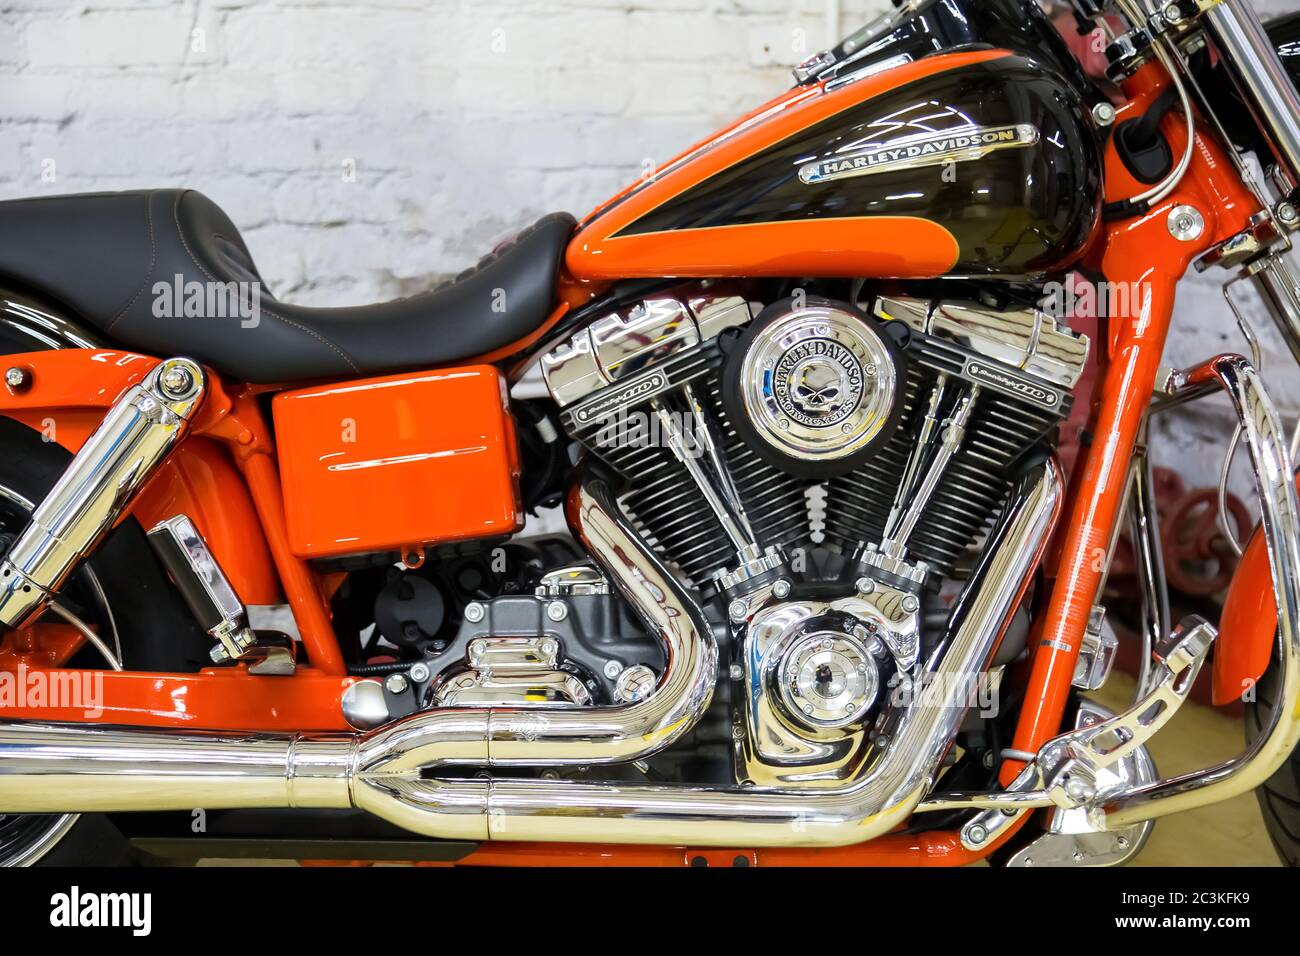 Harley Davidson Garage Stockfotos Und Bilder Kaufen Alamy